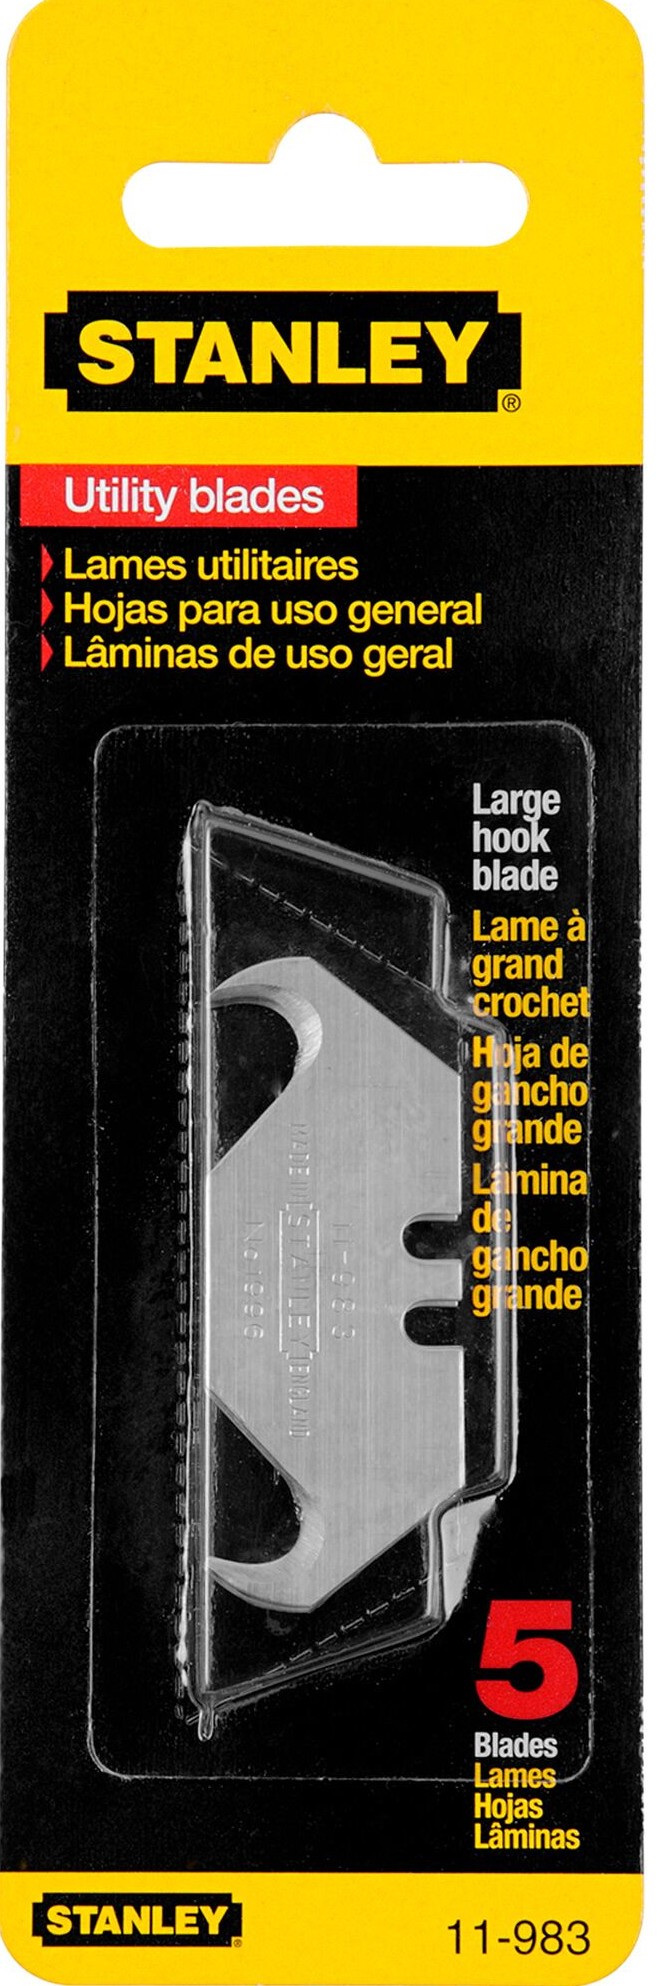 Лезвие для ножа крючкообразное STANLEY 1996 0-11-983, 5 шт - фото